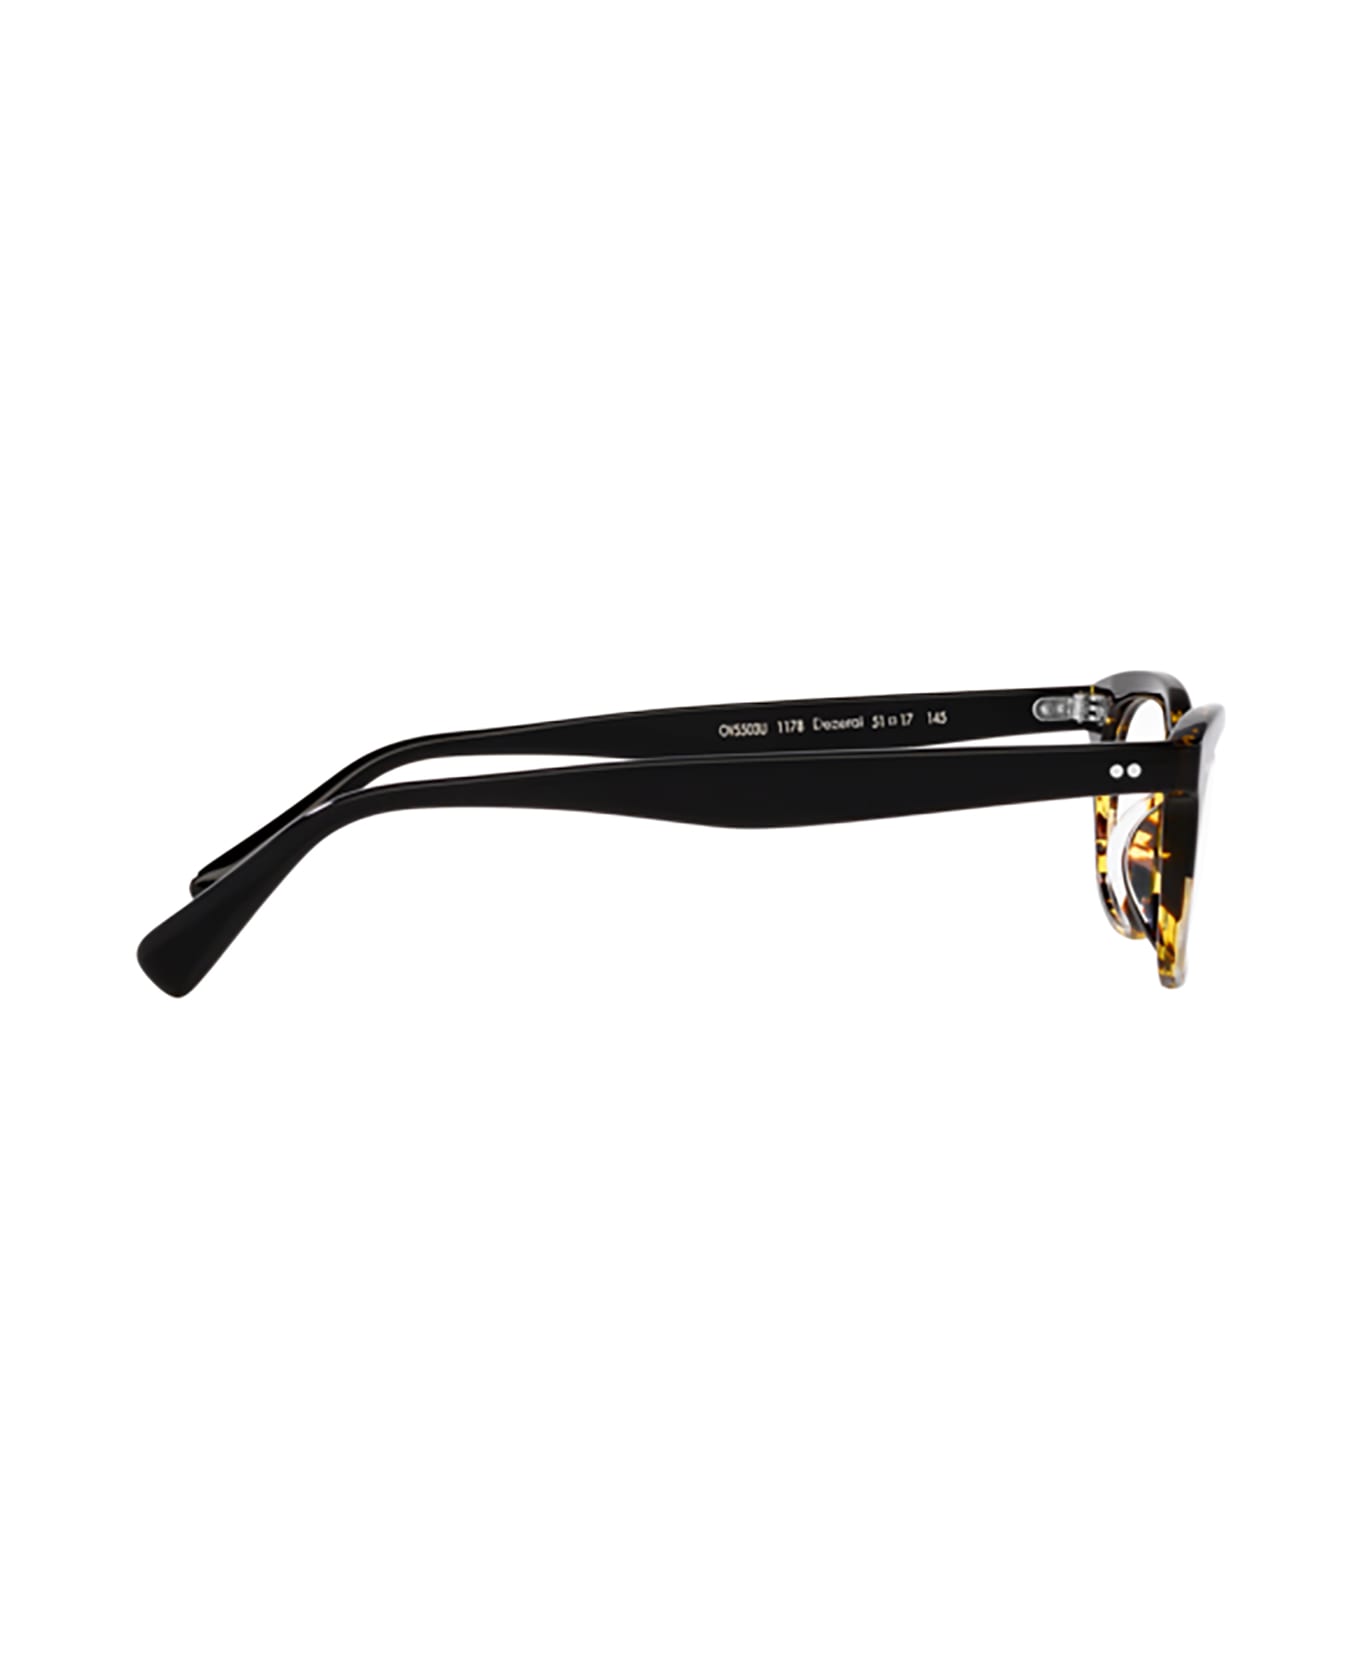 Oliver Peoples Ov5503u Black / Dtbk Gradient Glasses - Black / Dtbk Gradient